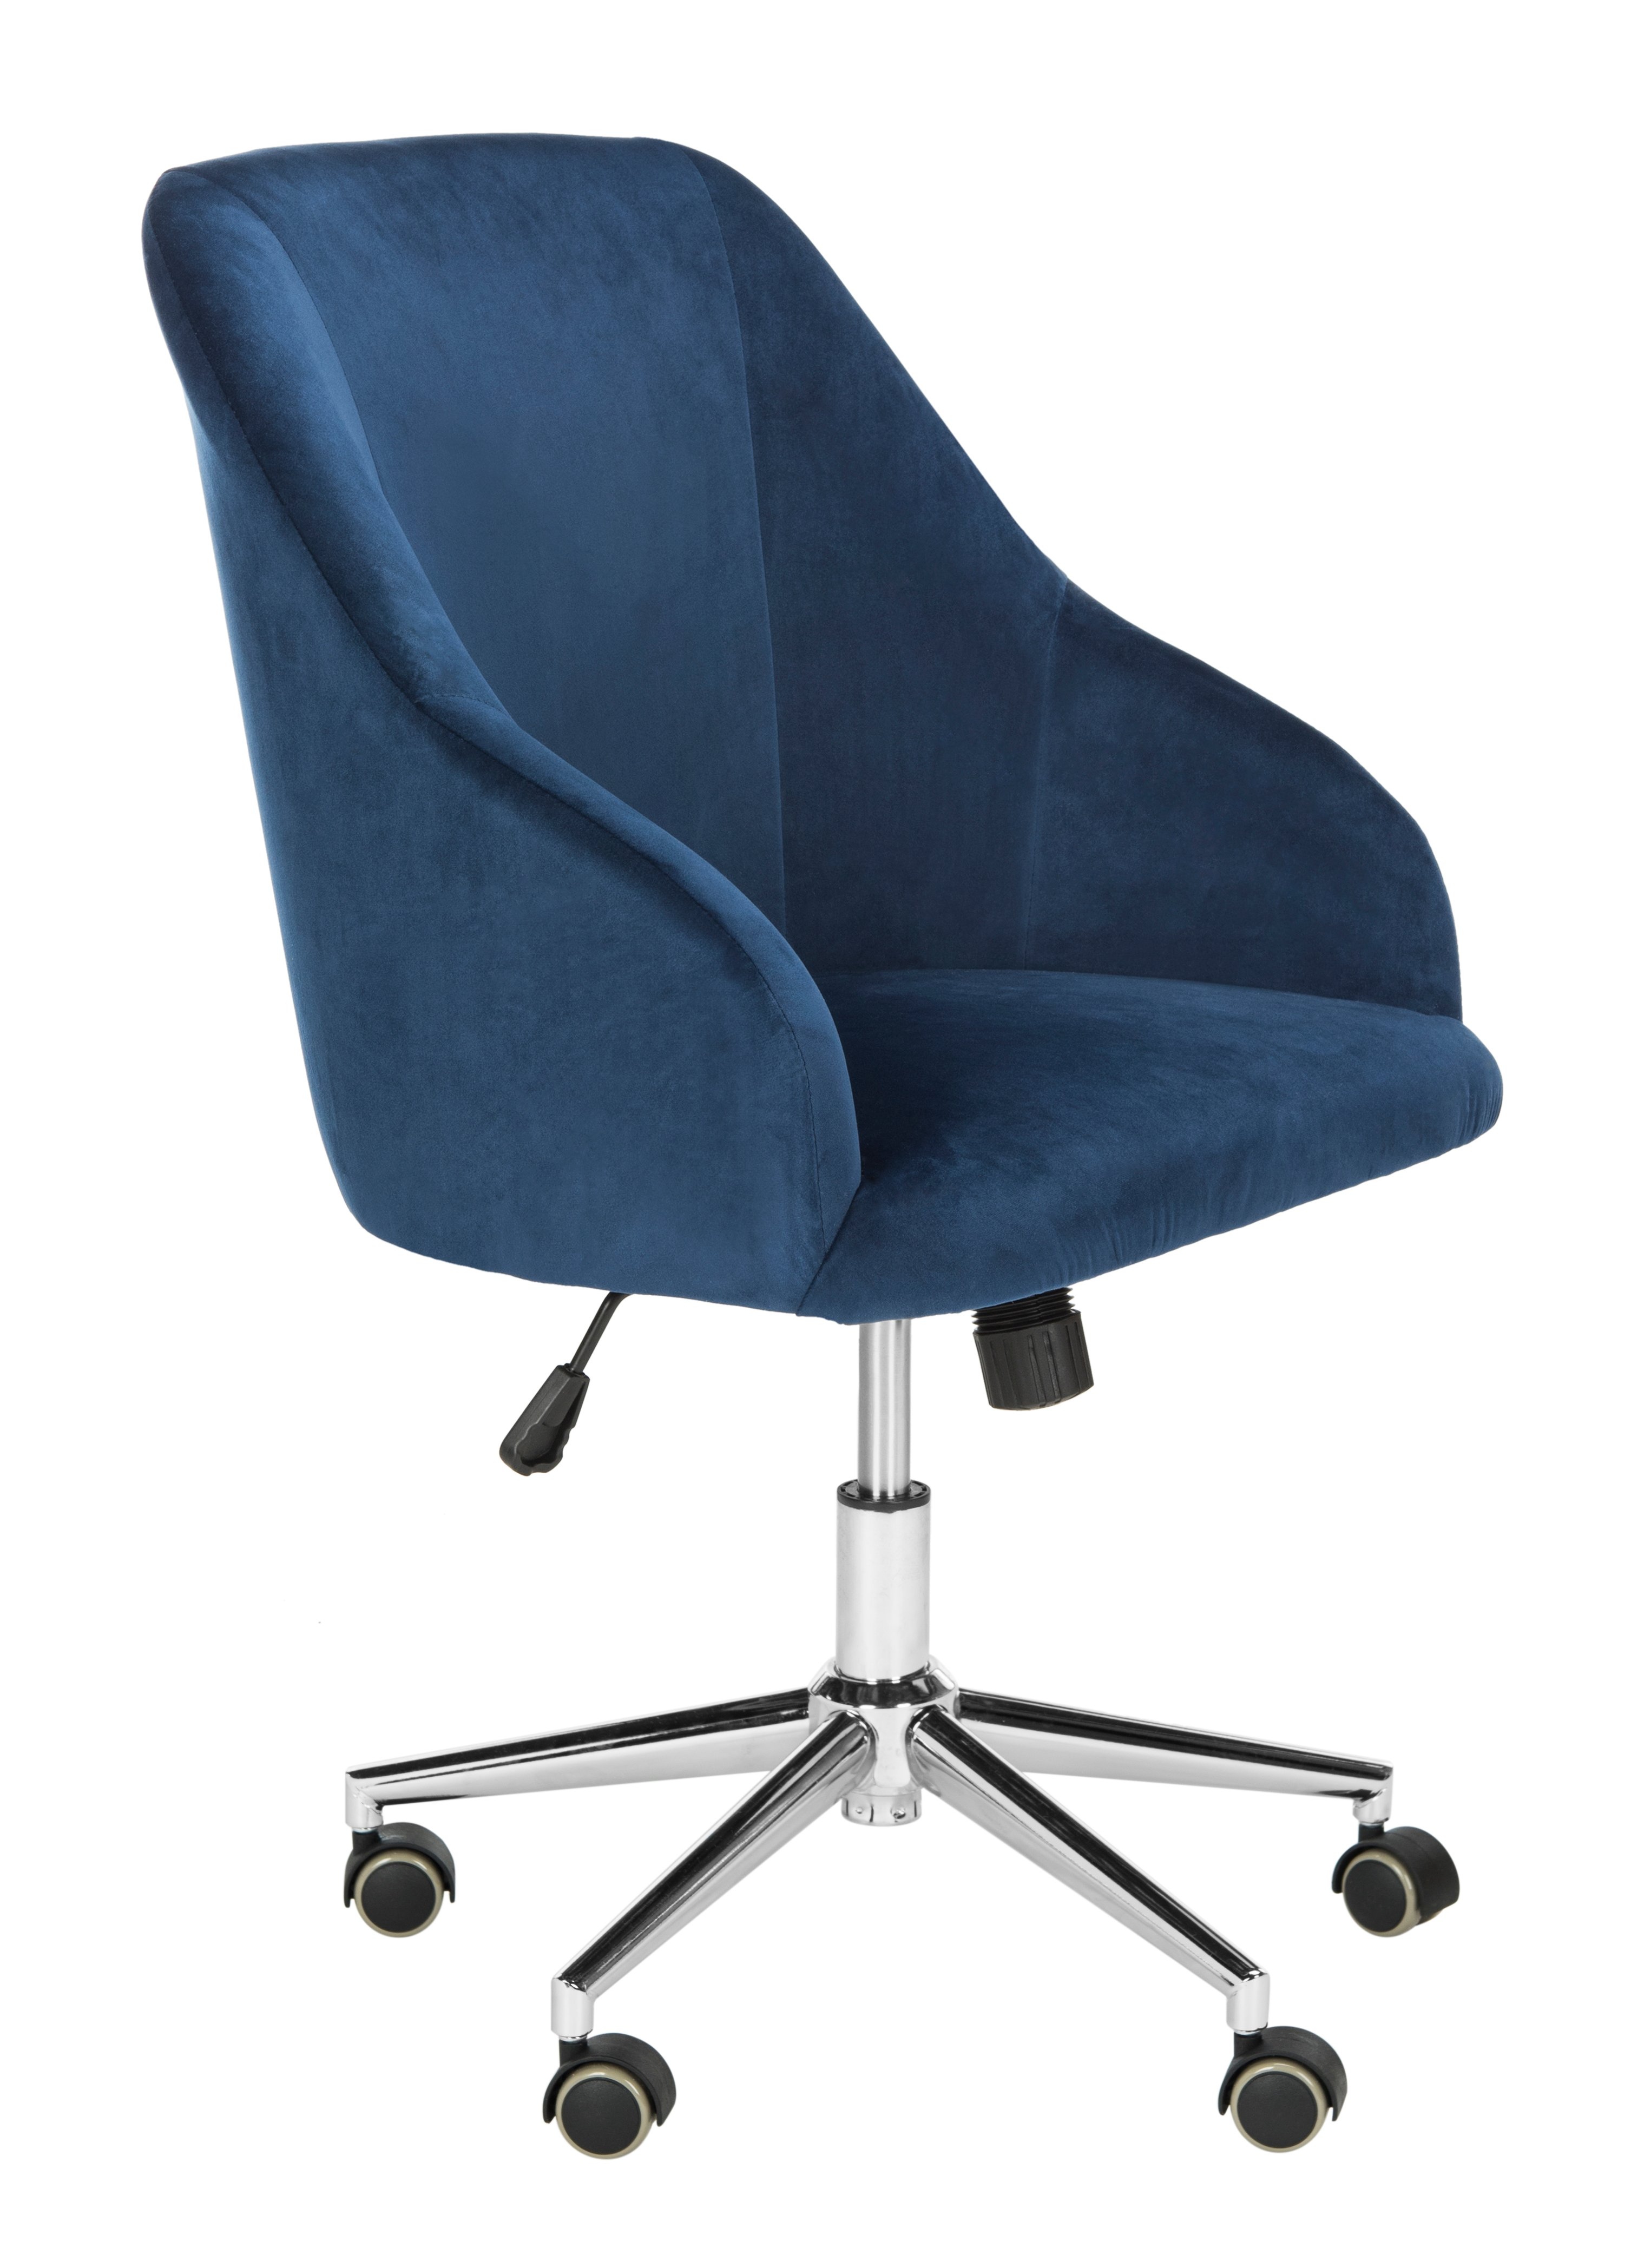 Adrienne Velvet Chrome Leg Swivel Office Chair - Navy/Chrome - Arlo Home - Image 1